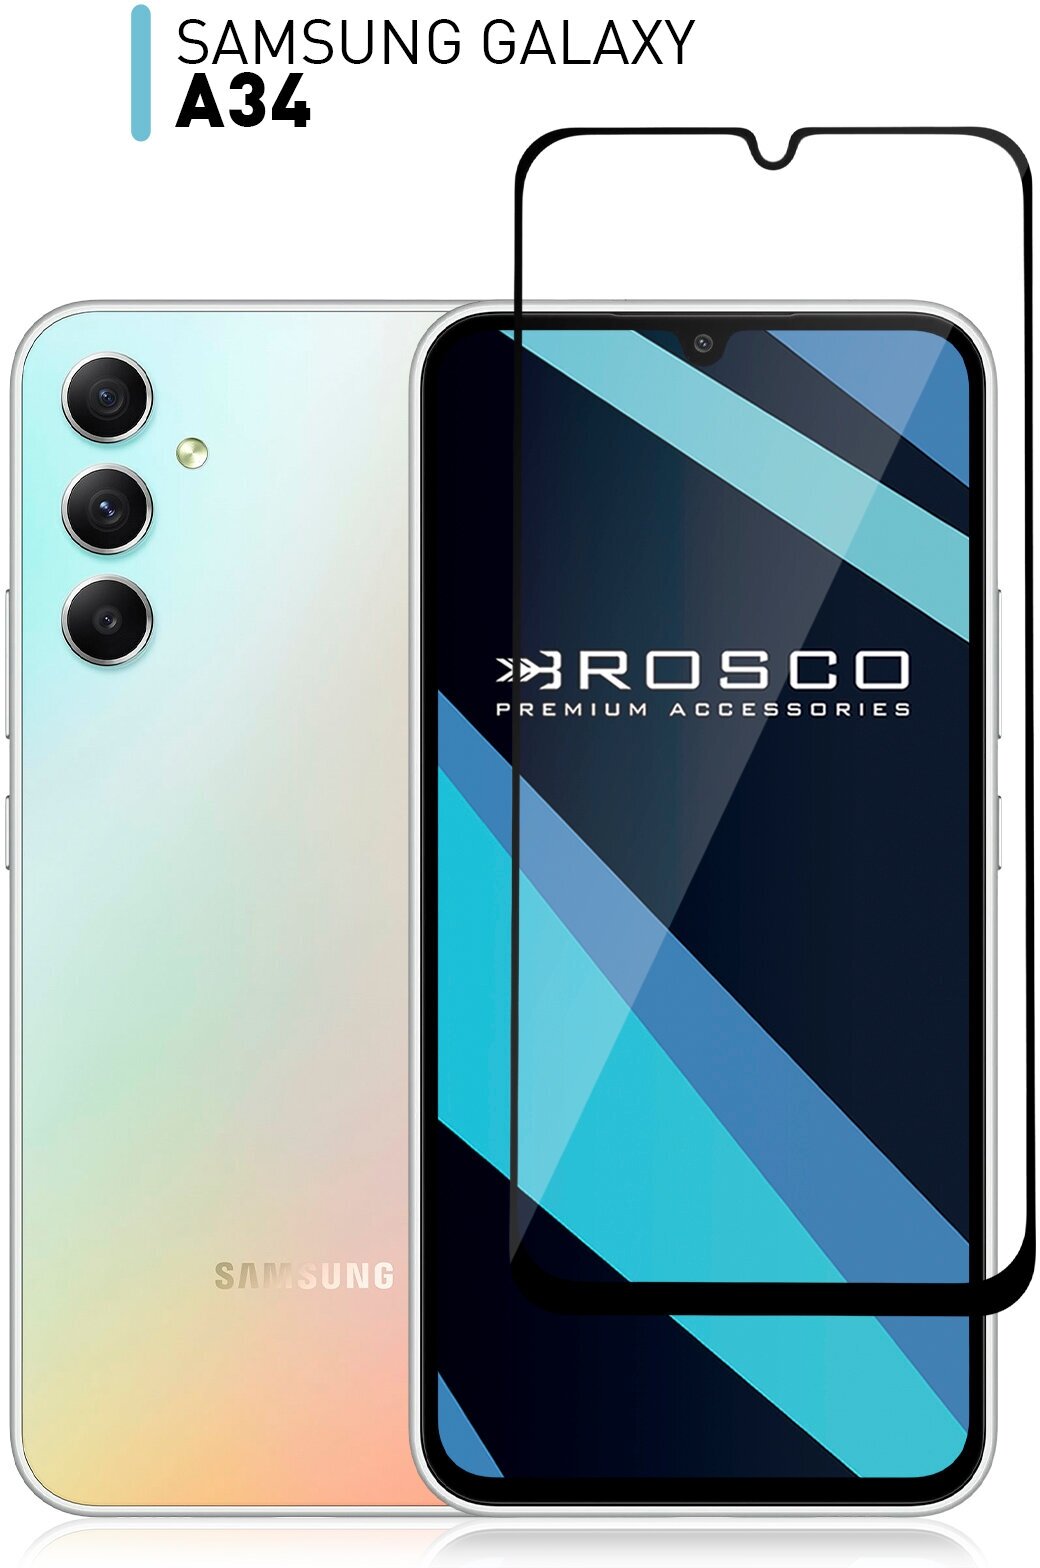 Защитное стекло ROSCO для Samsung Galaxy A34 (Самсунг Галакси А34) противоударное стекло закалено, олеофобное покрытие, прозрачное стекло